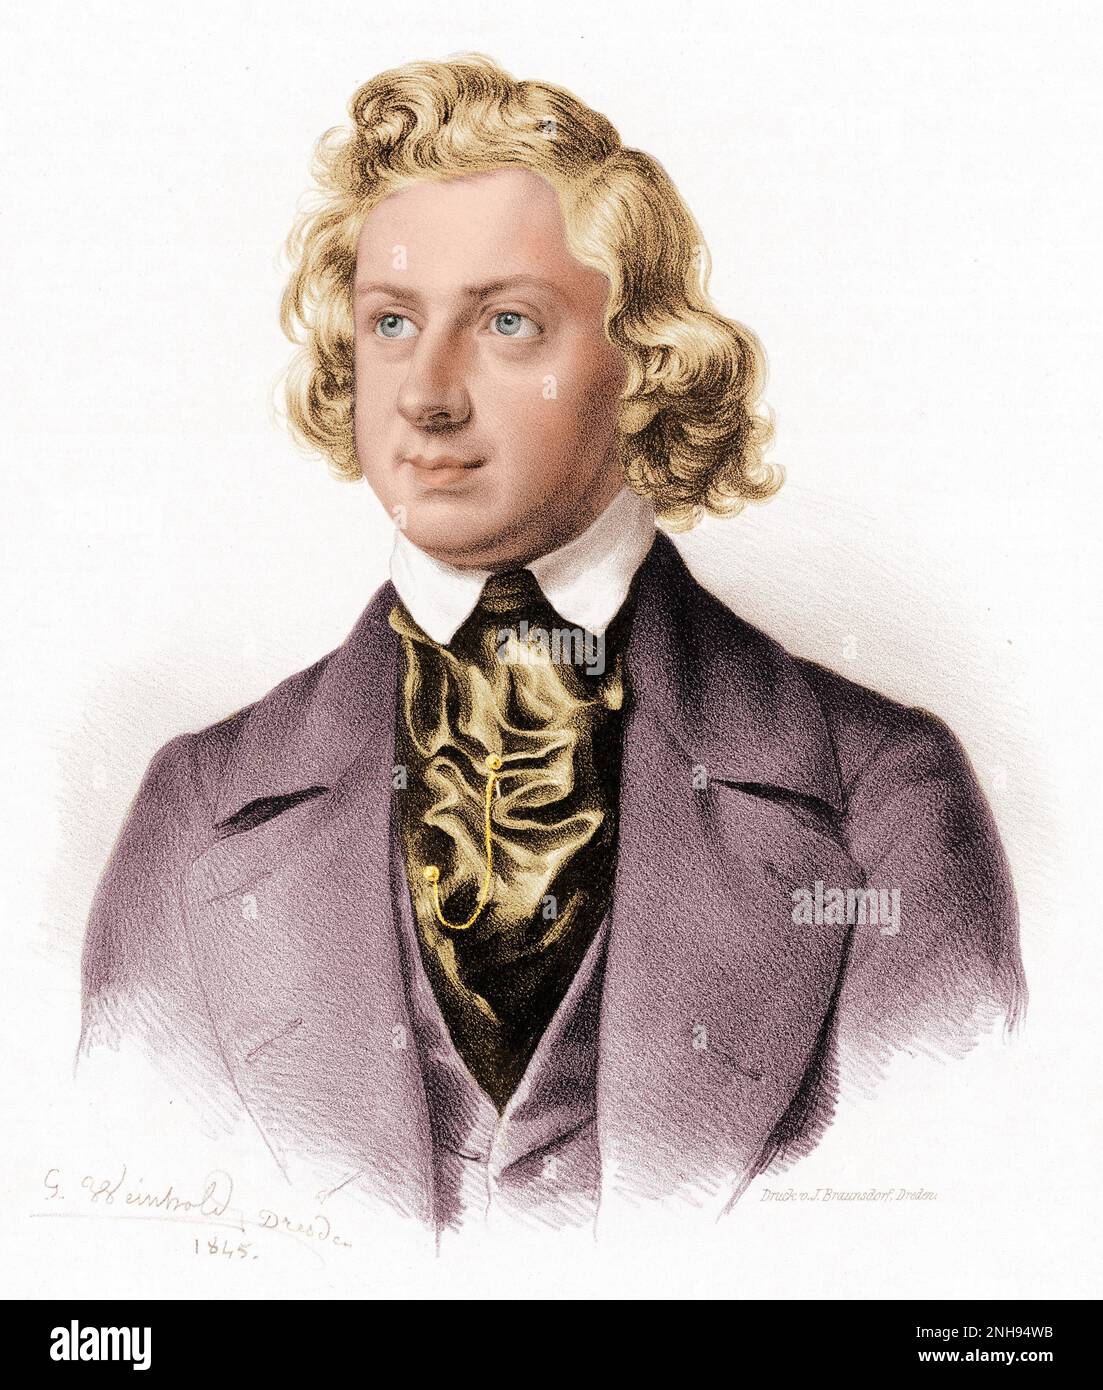 Niels Wilhelm Gade (1817-1890) est un compositeur, chef d'orchestre, violoniste et organiste danois. Gravure par Johann Georg Weinhold (1813-1880) de 1845. Colorisé. Banque D'Images